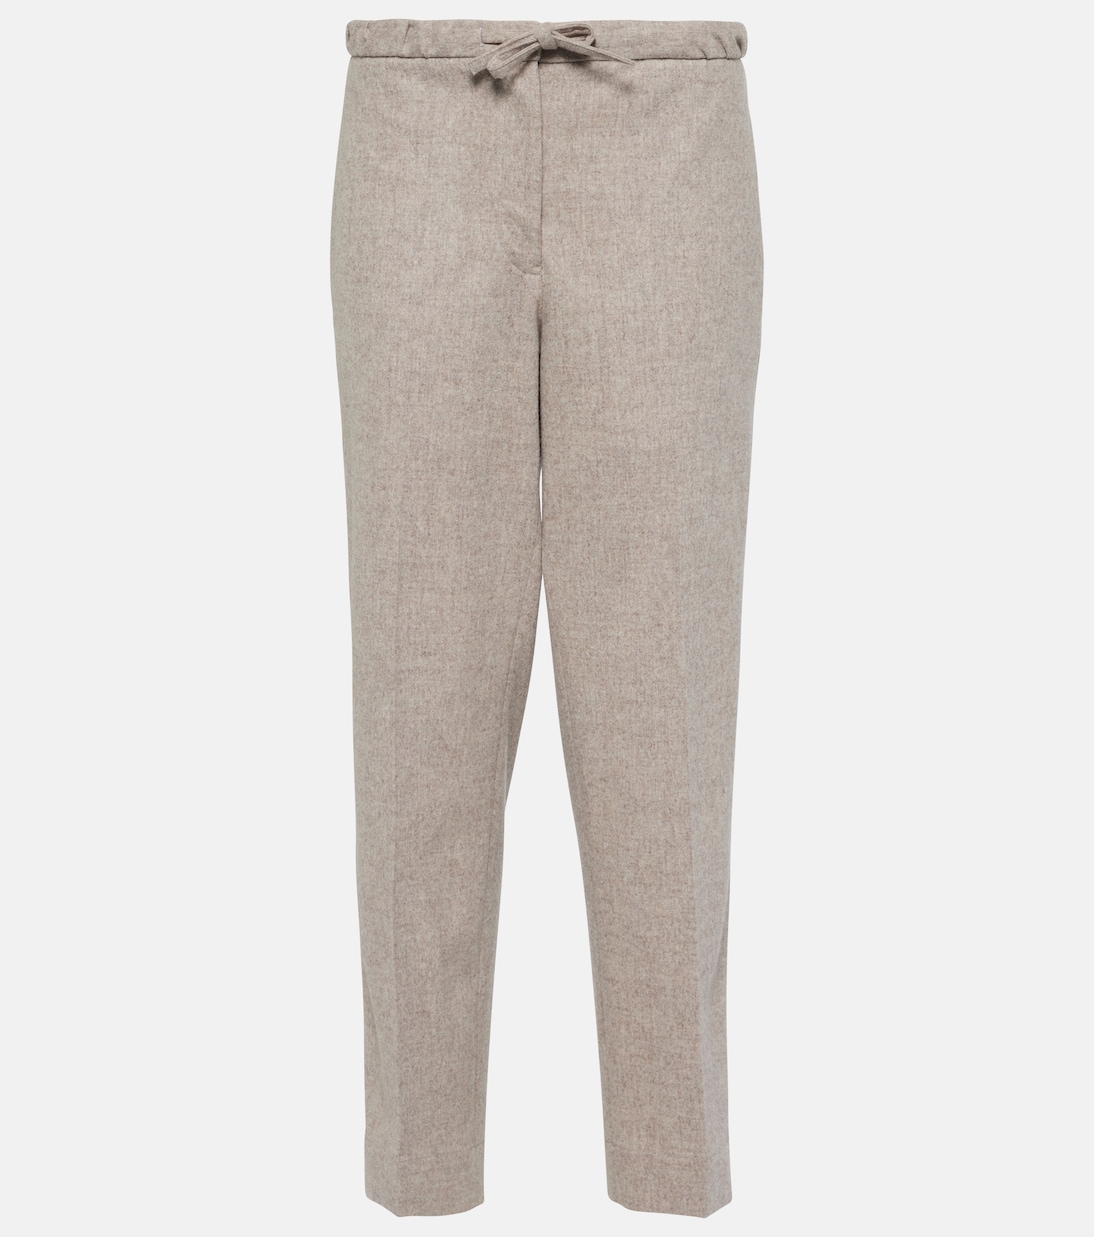 Укороченные прямые брюки из шерсти Jil Sander, бежевый